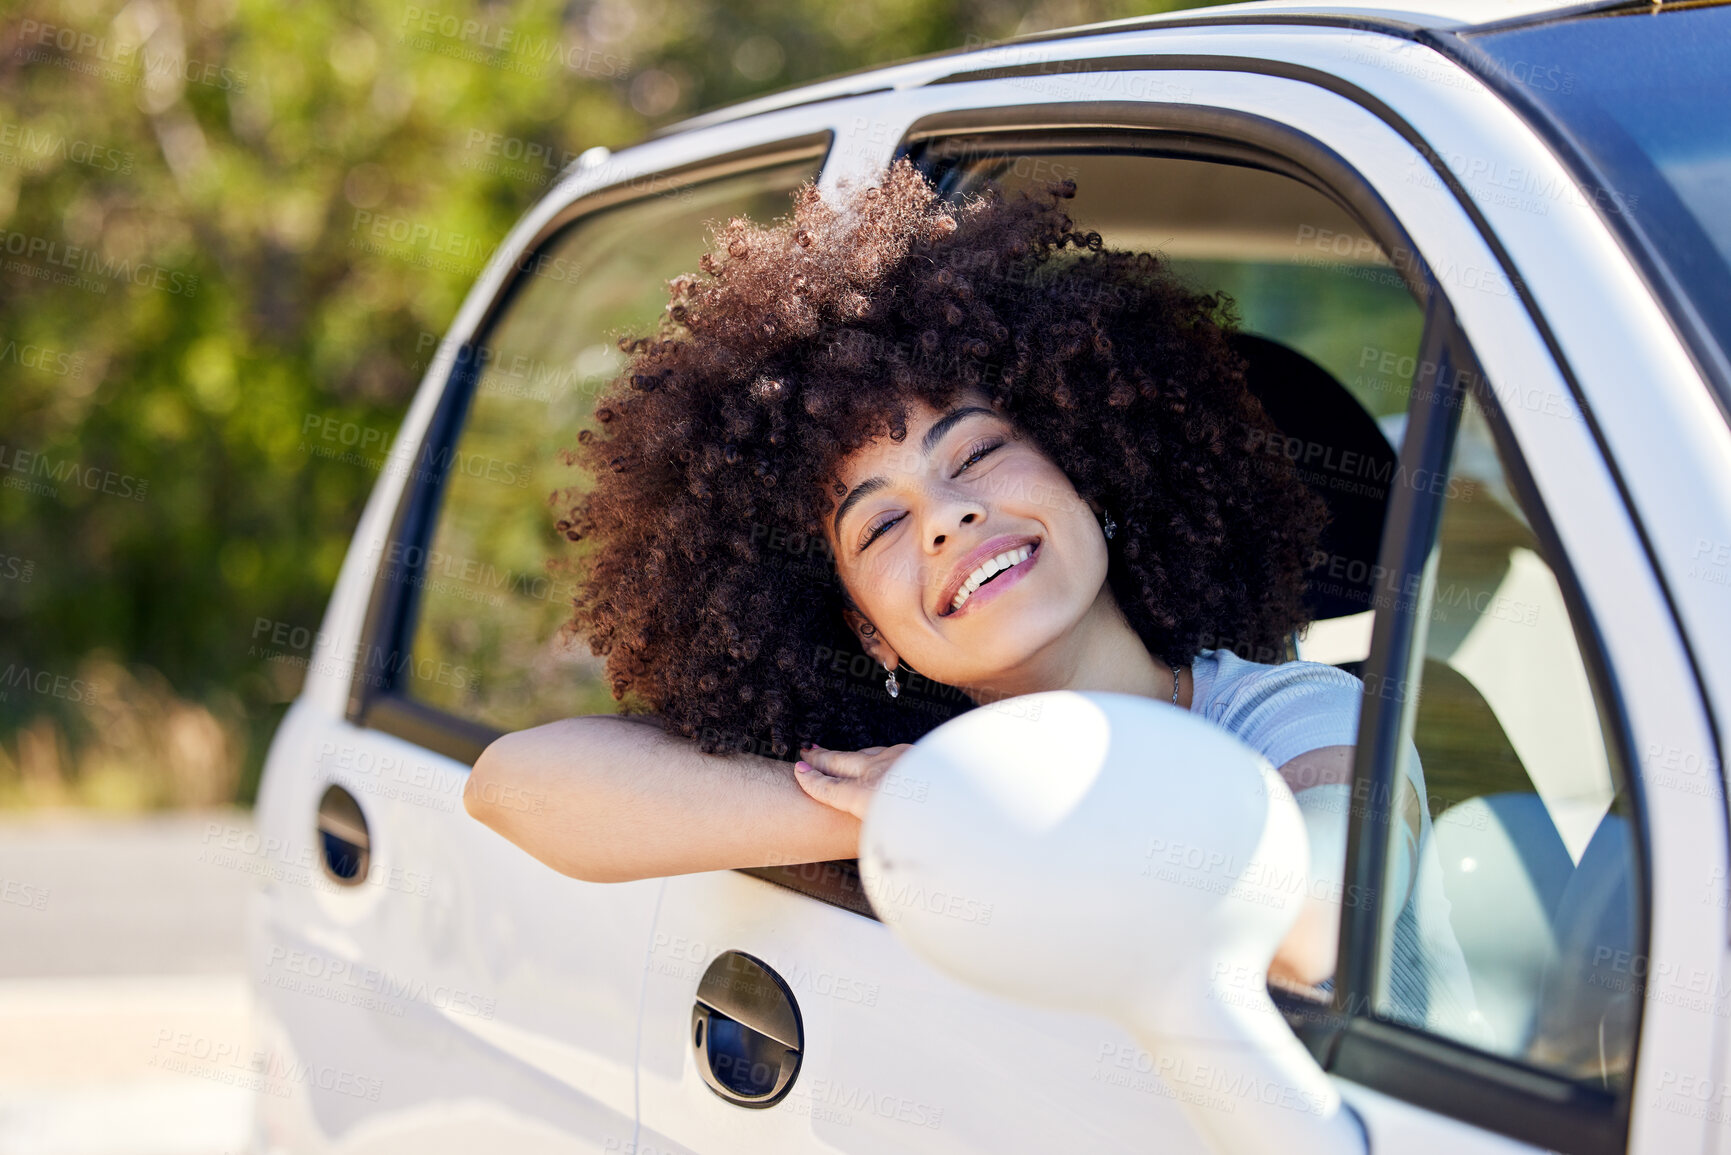 Buy stock photo Shot of a beautiful young woman enjoying an adventurous ride in a car